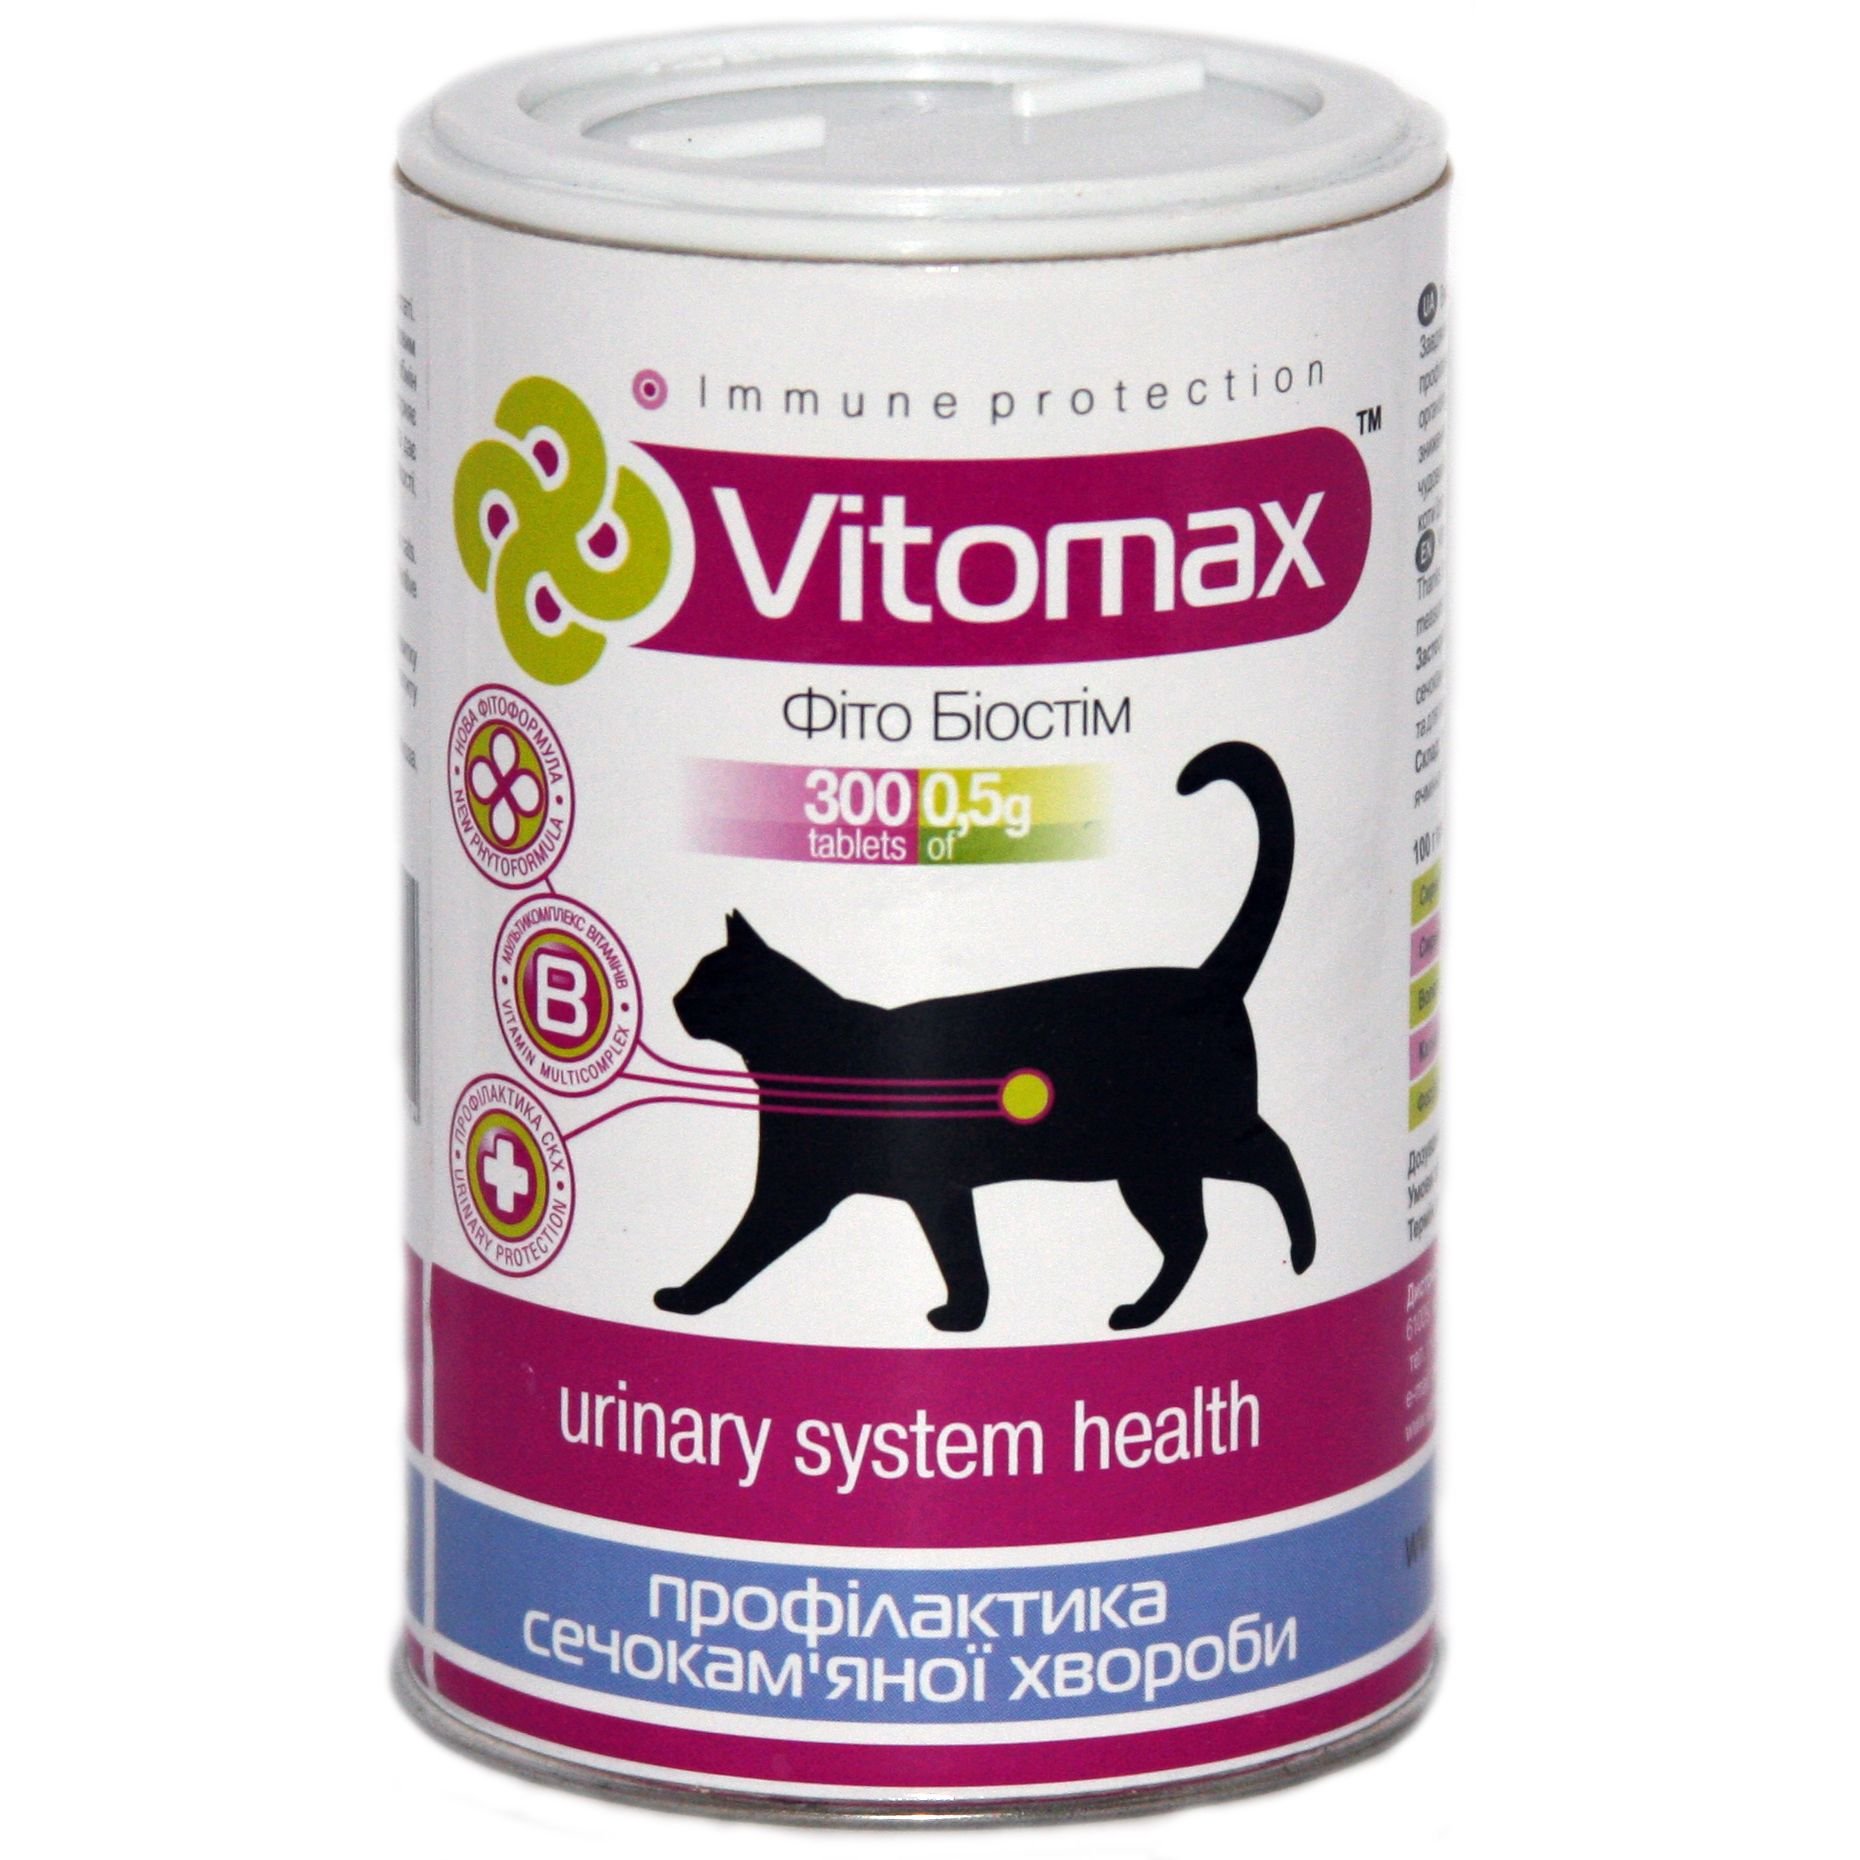 Витамины Vitomax профилактика мочекаменной болезни для кошек, 300 таблеток - фото 1